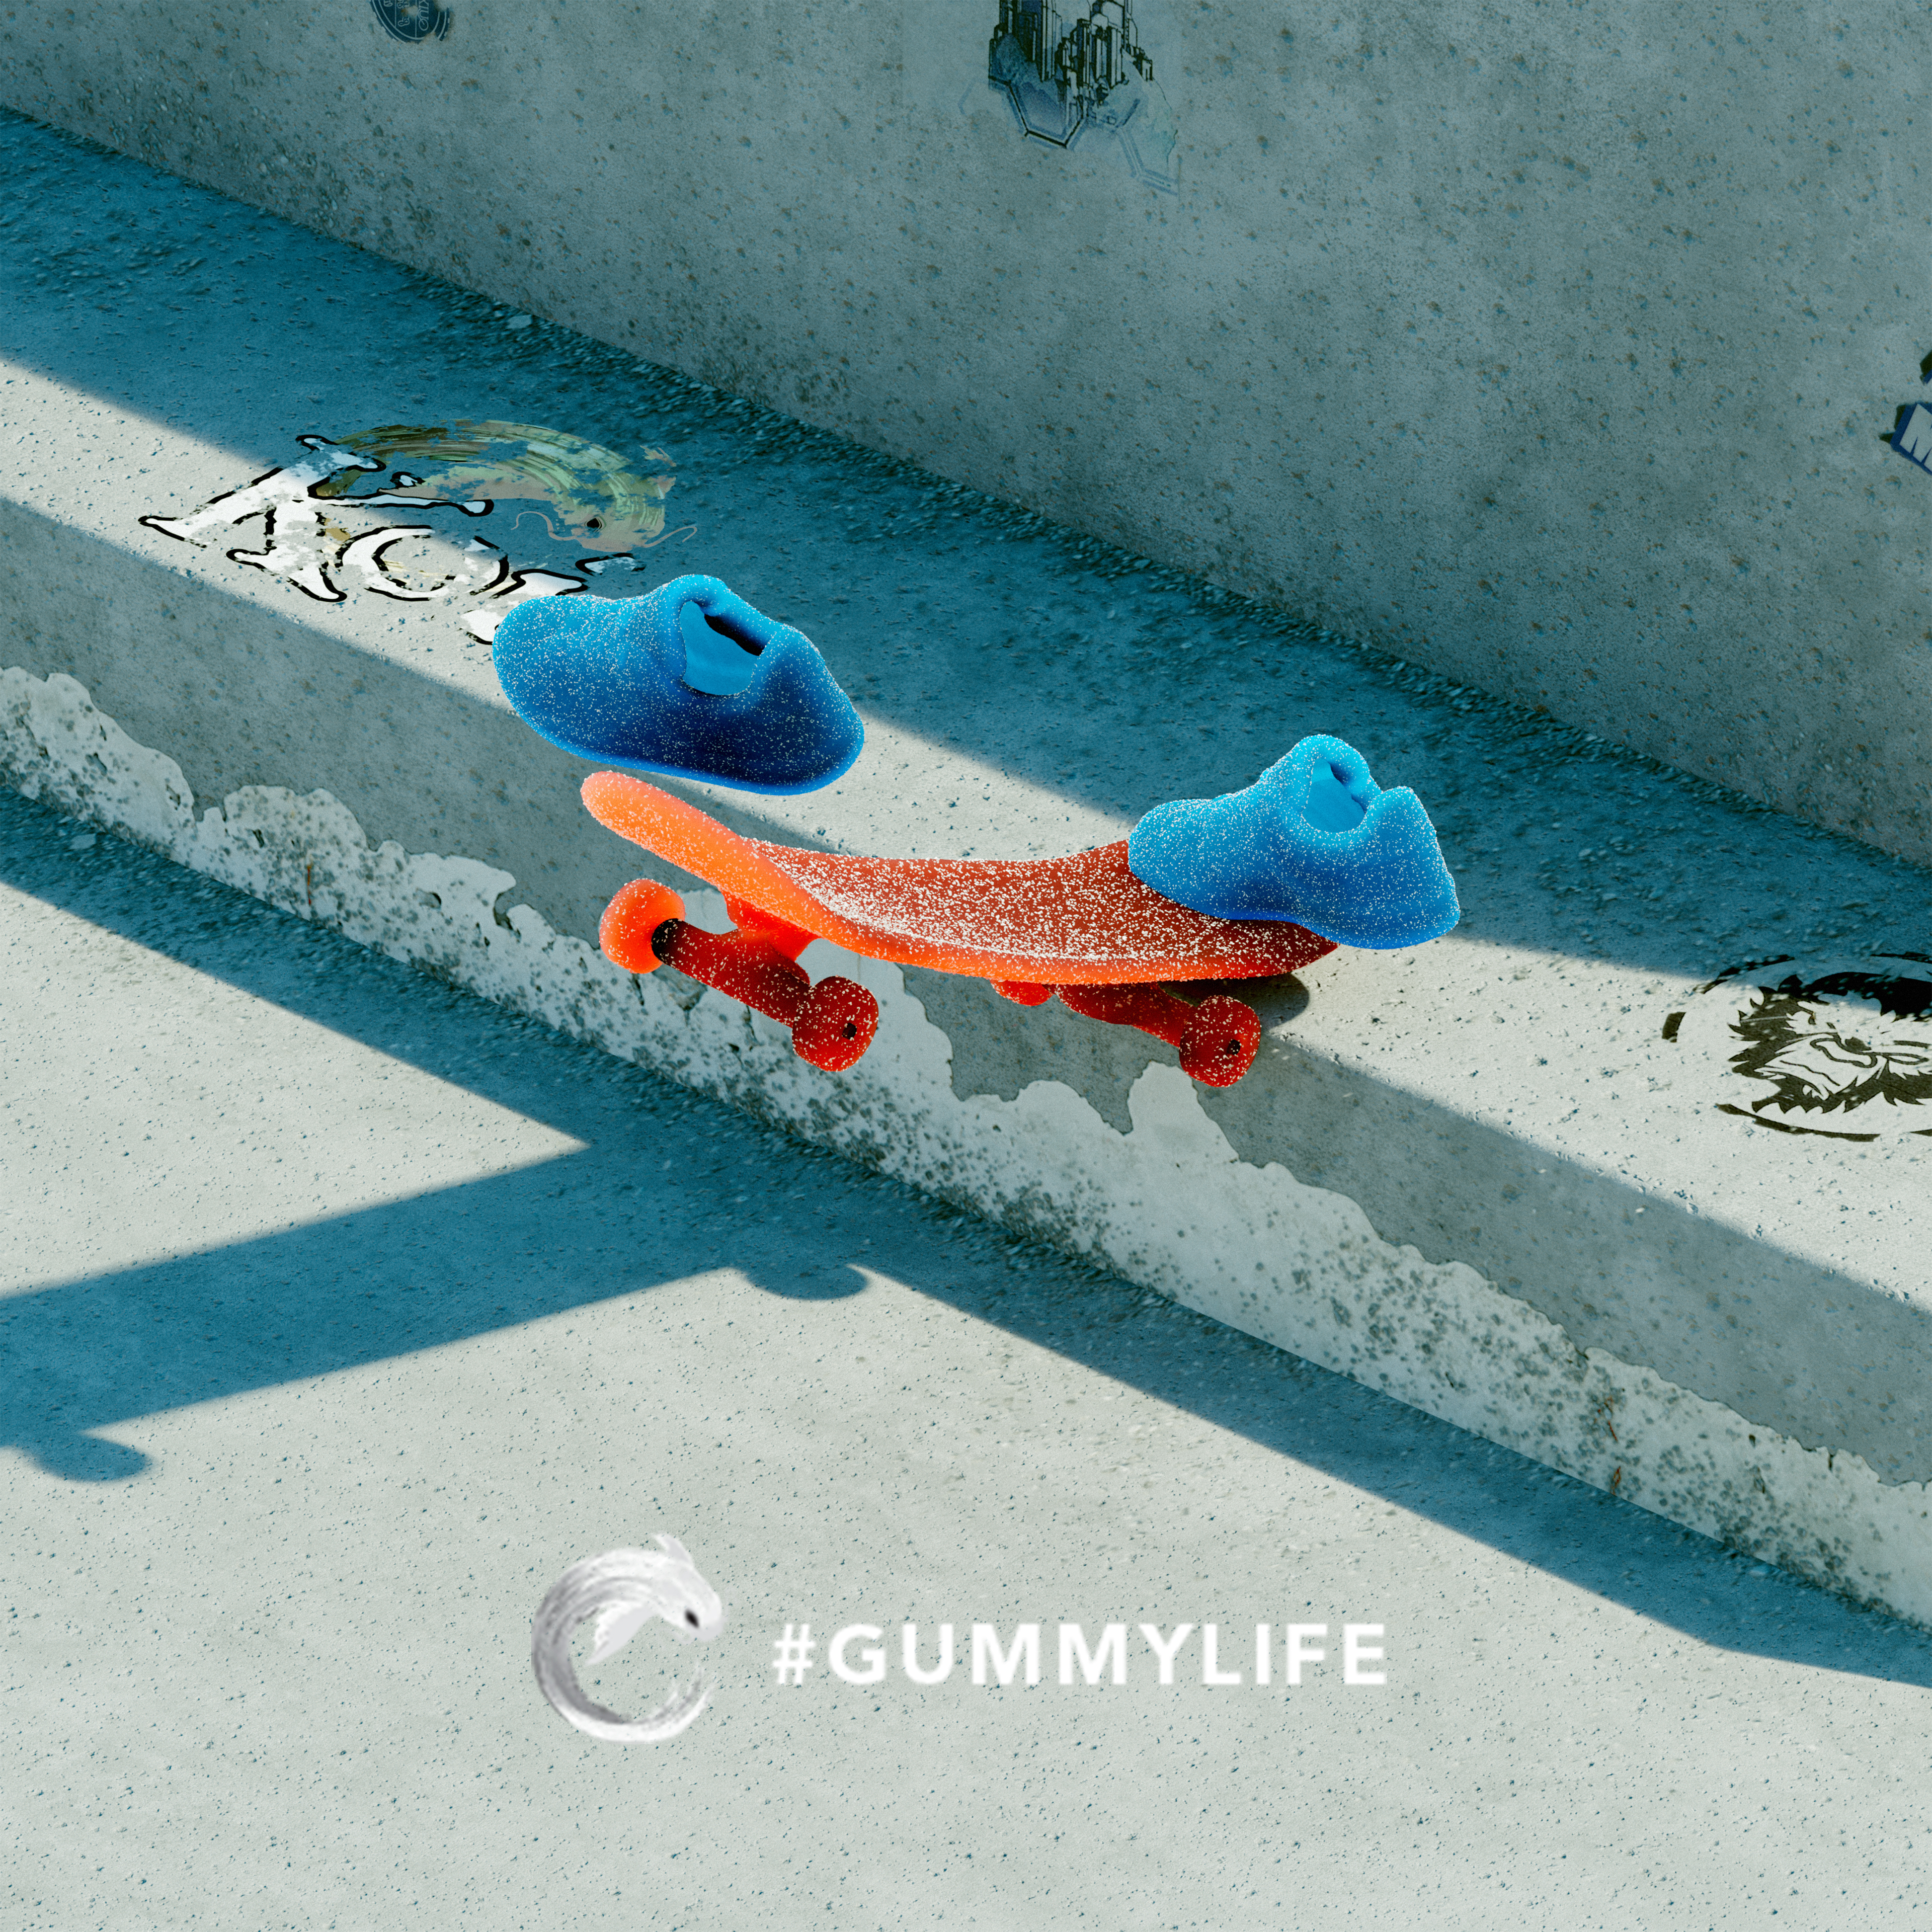 Koi Gummy Life Skateboarding